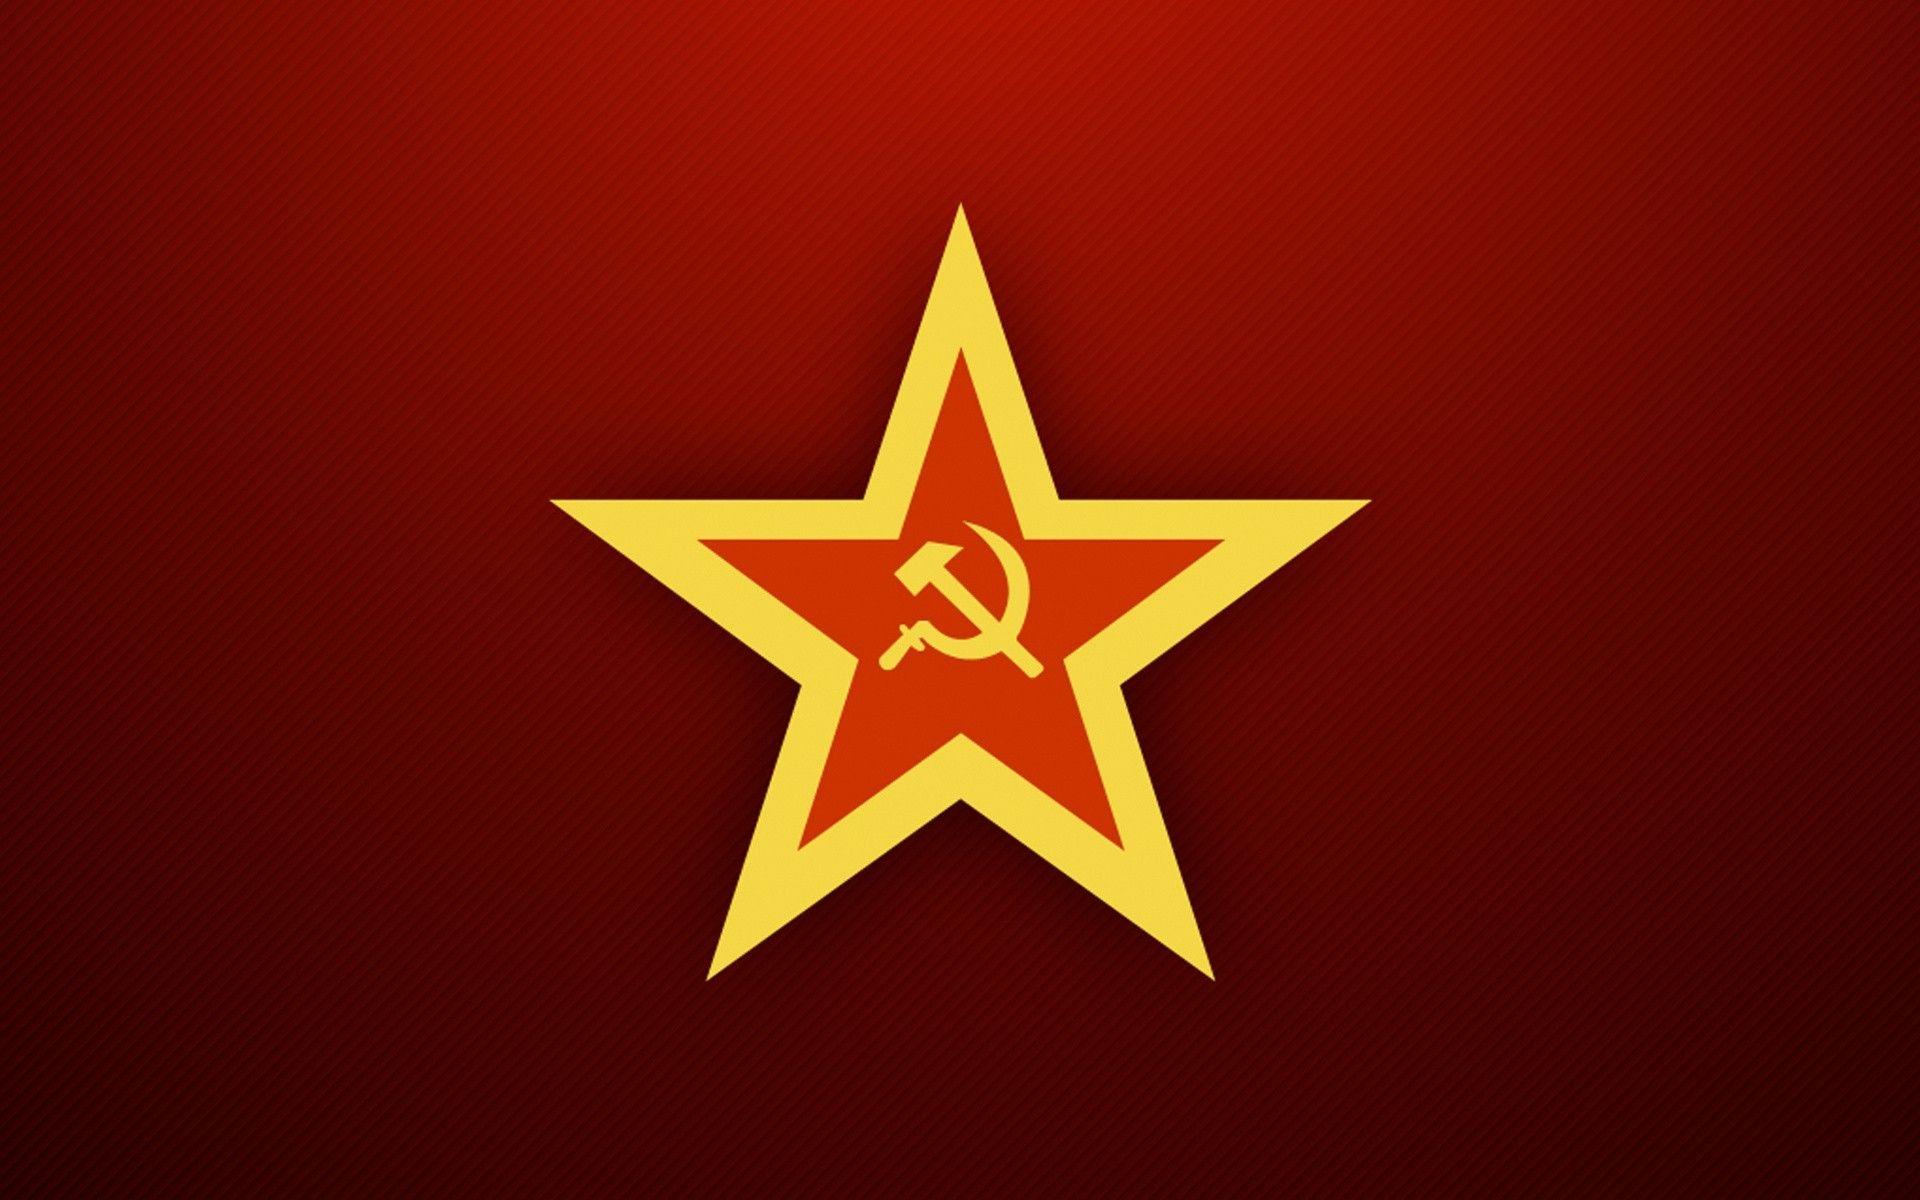 USSR Soviet Union